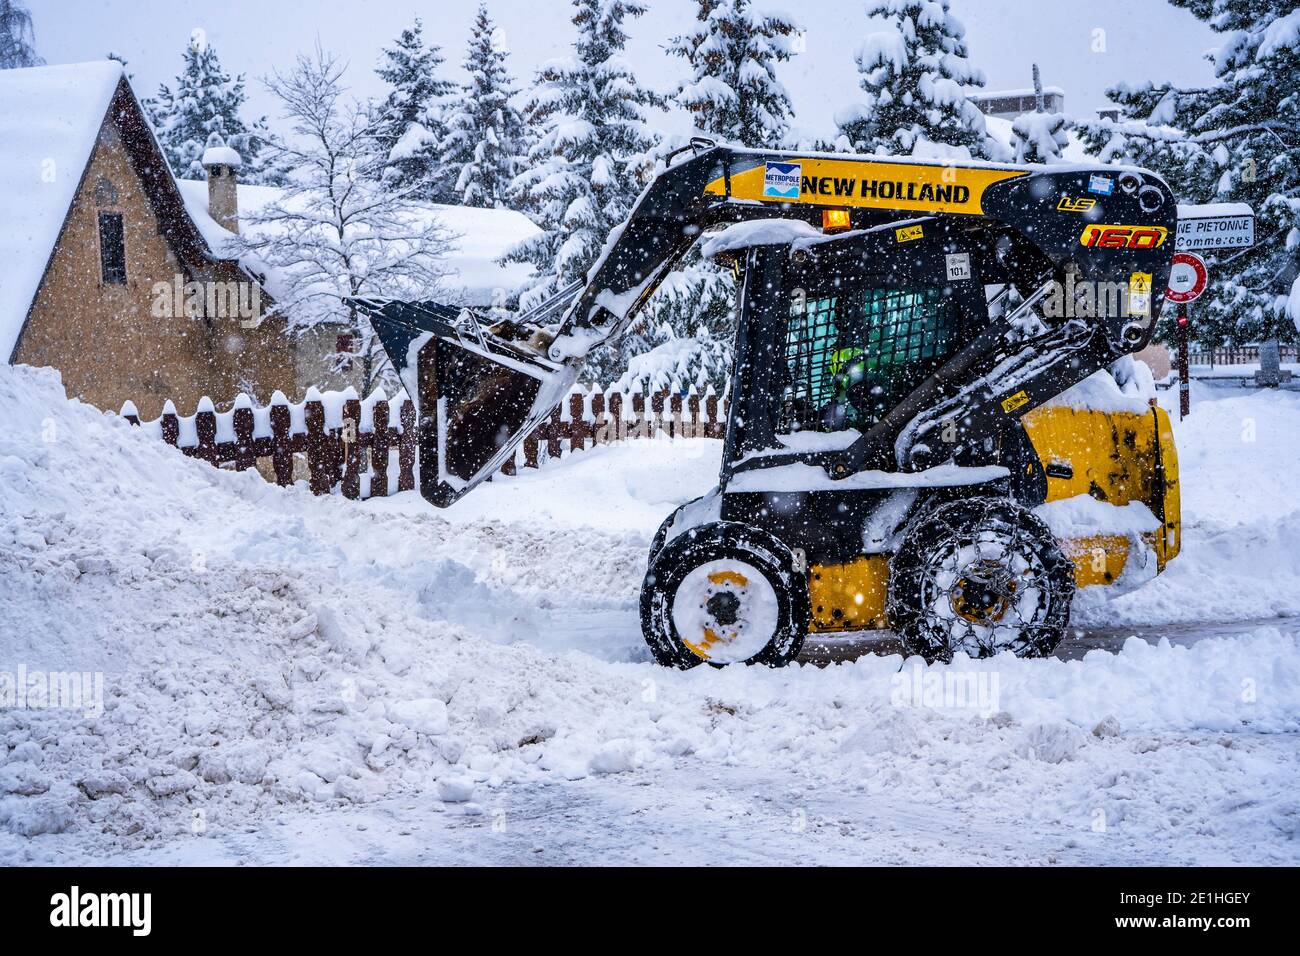 Auron, Francia 01.01.2021 pala gommata che rimuove la neve su una stazione sciistica. Eliminare la strada dalla neve. Foto di alta qualità Foto Stock